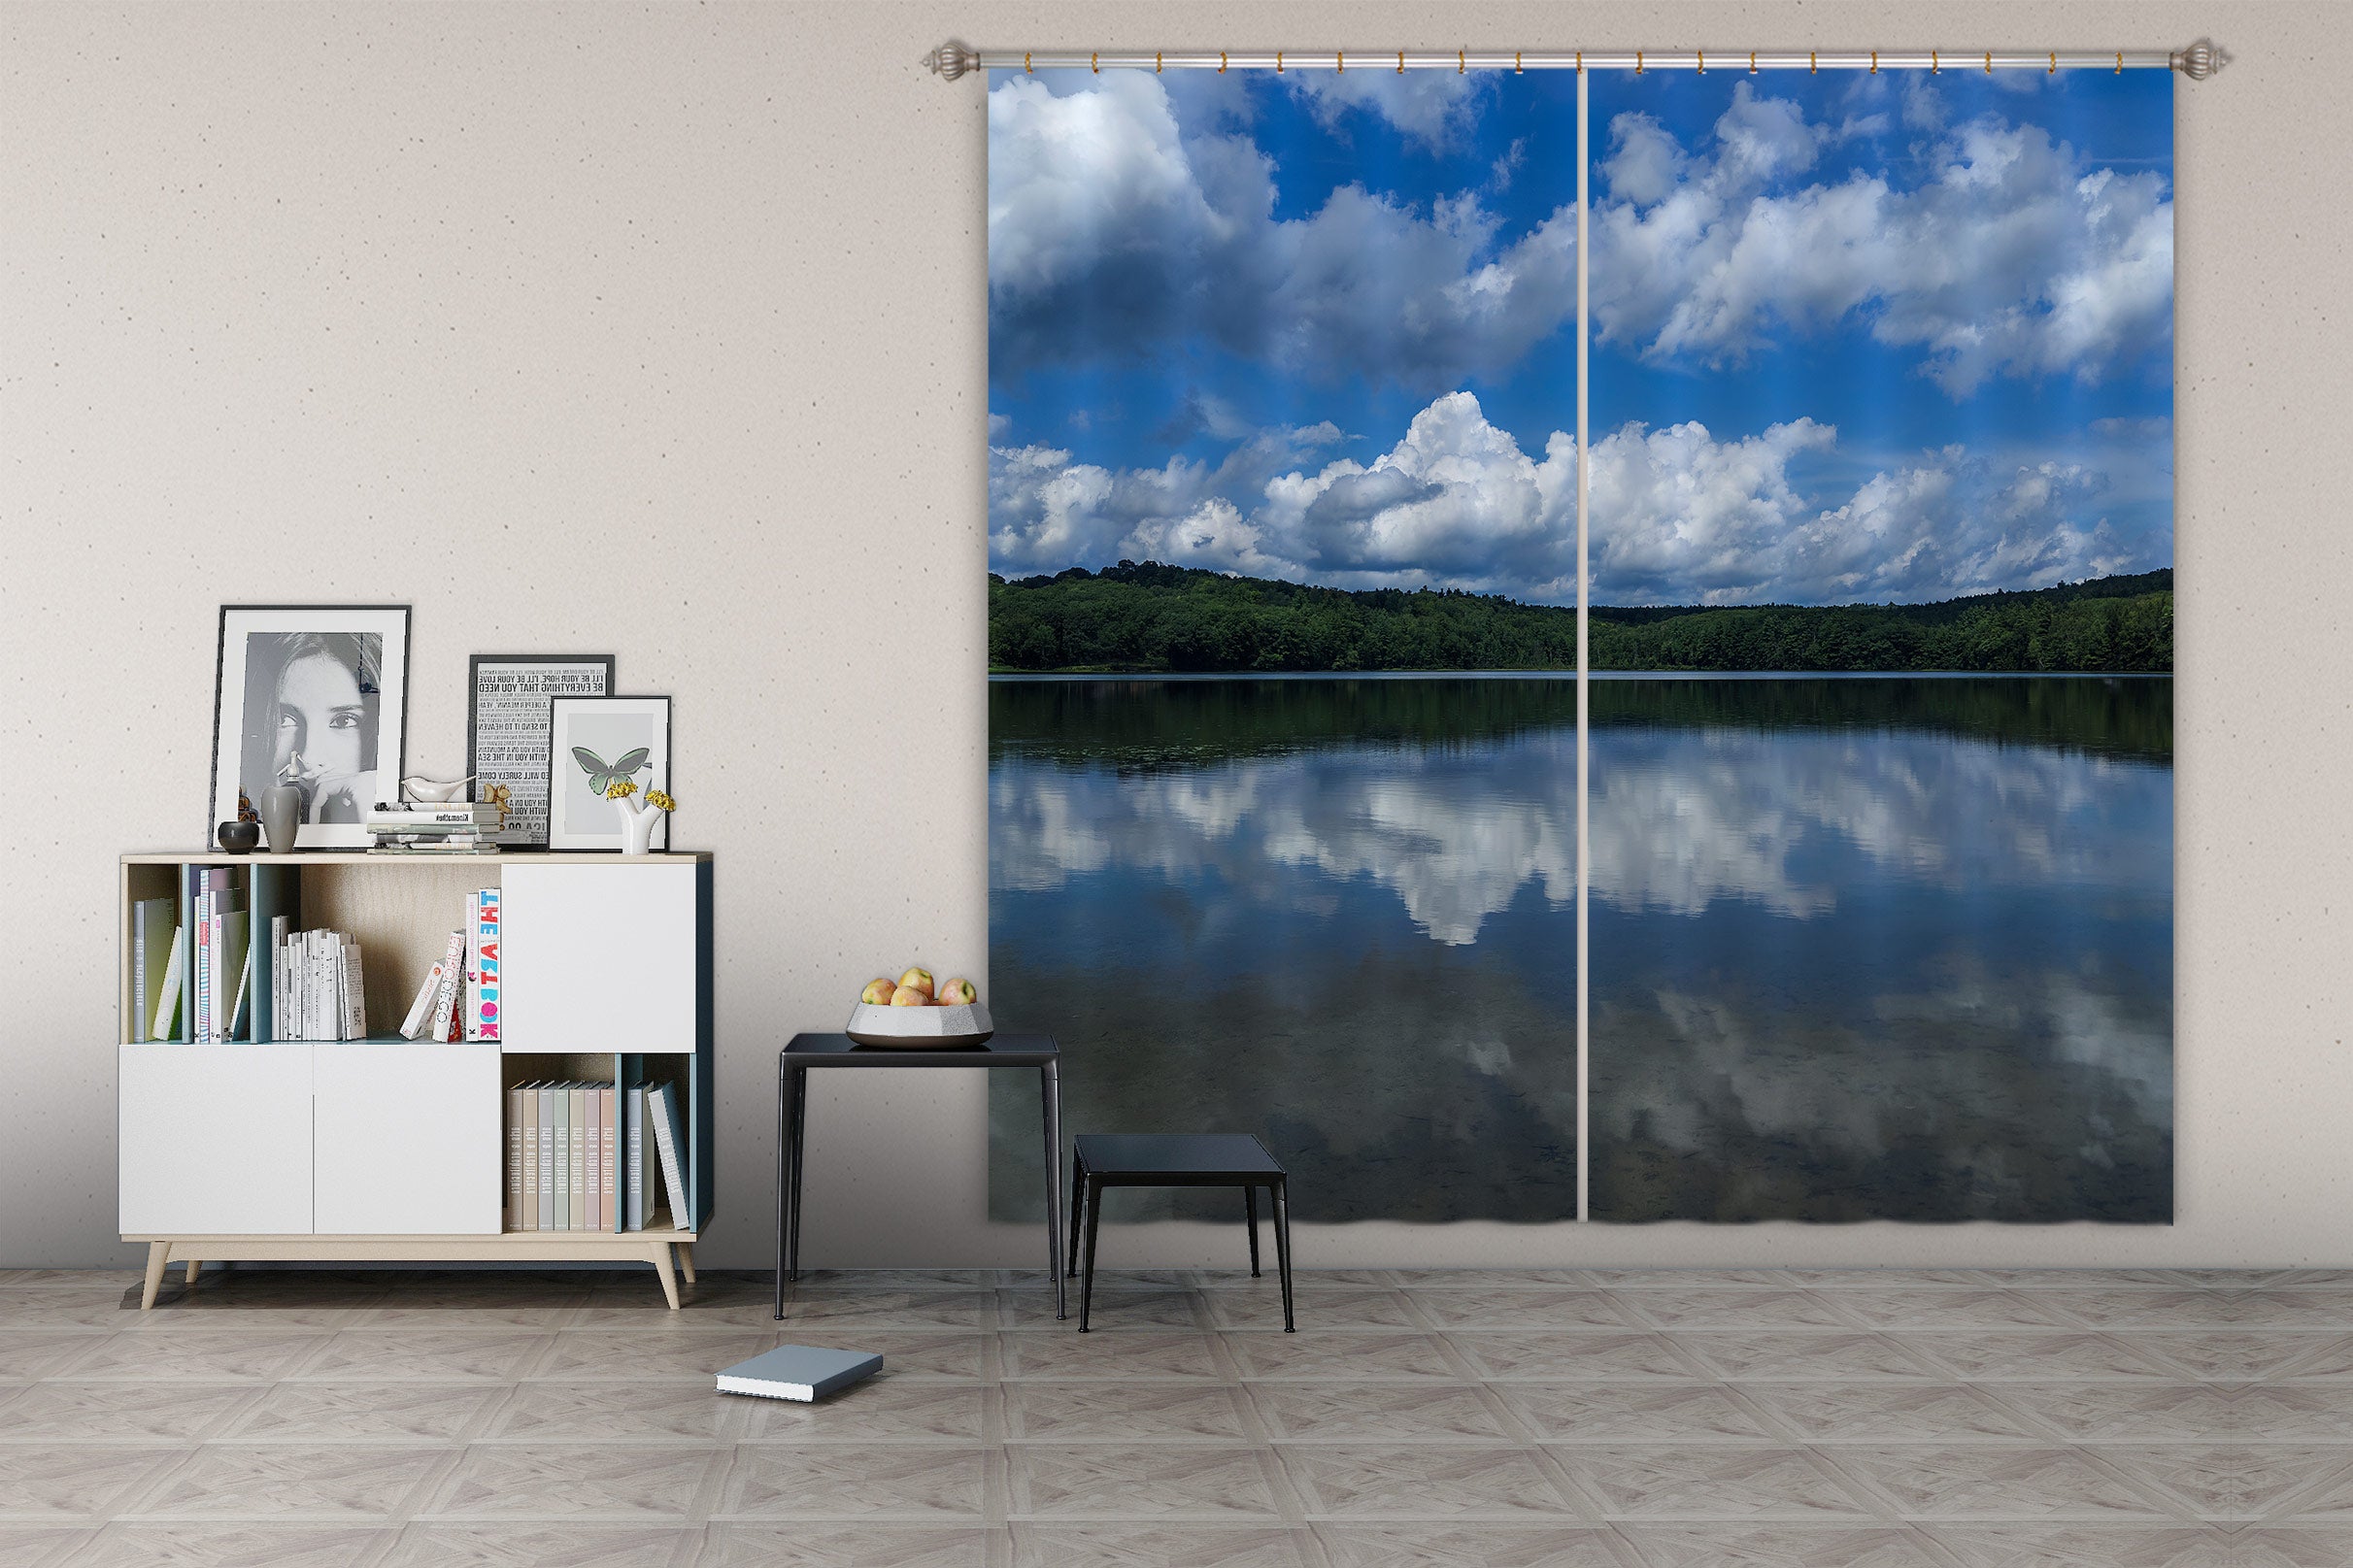 3D Cloud Lake 004 Jerry LoFaro Curtain Curtains Drapes